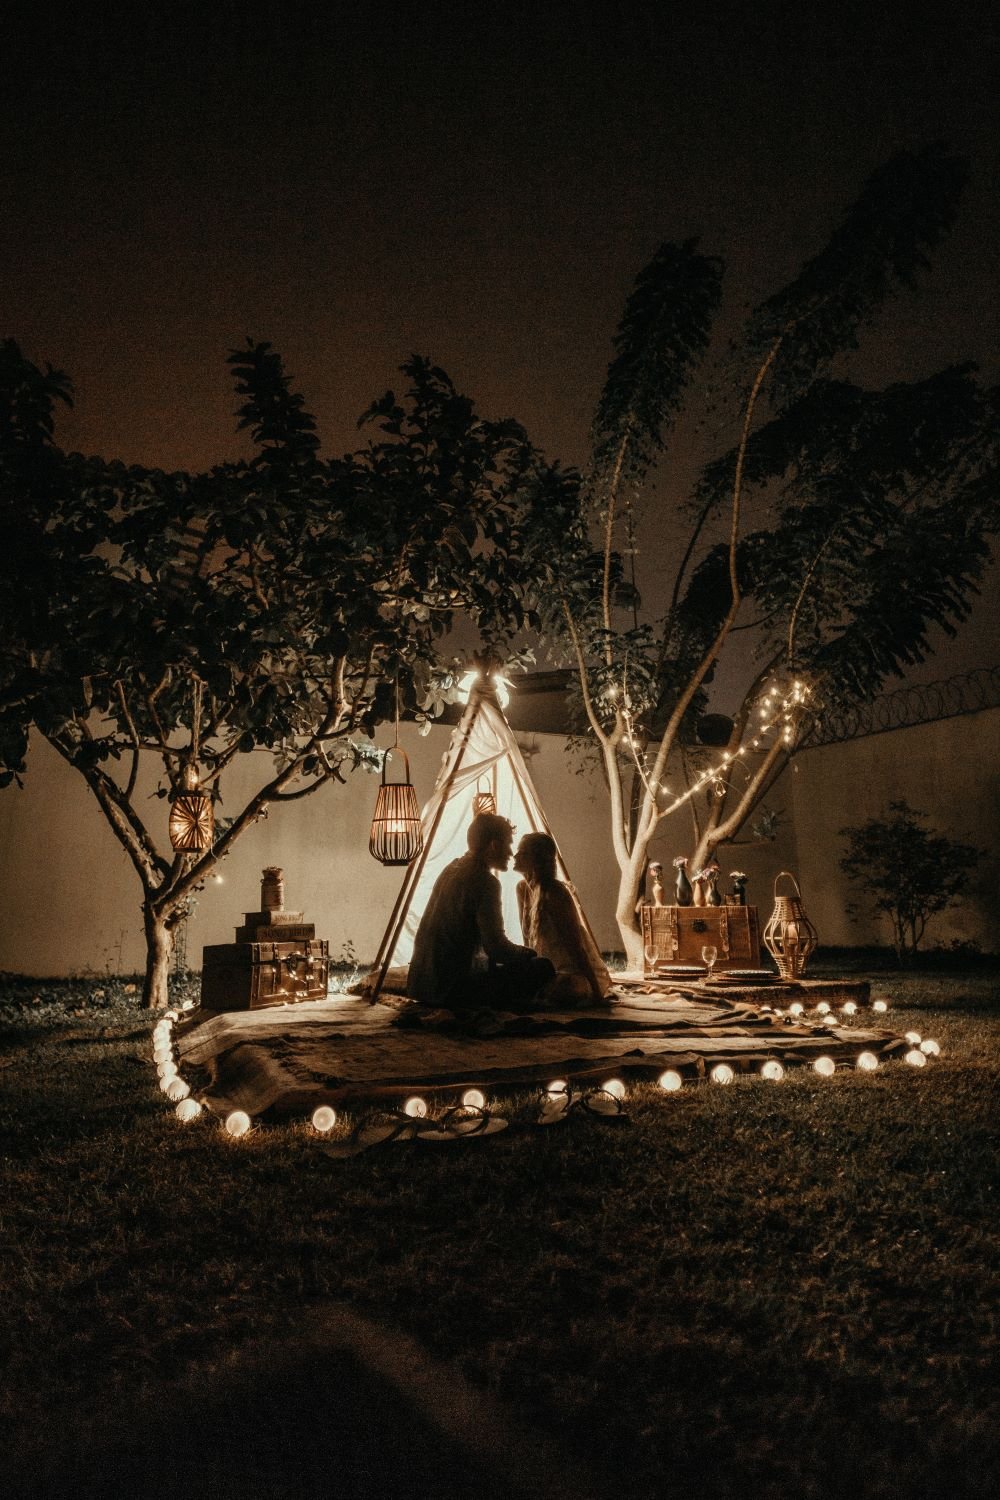 Casal acampado ao lado de árvores, com velas e iluminações em volta.